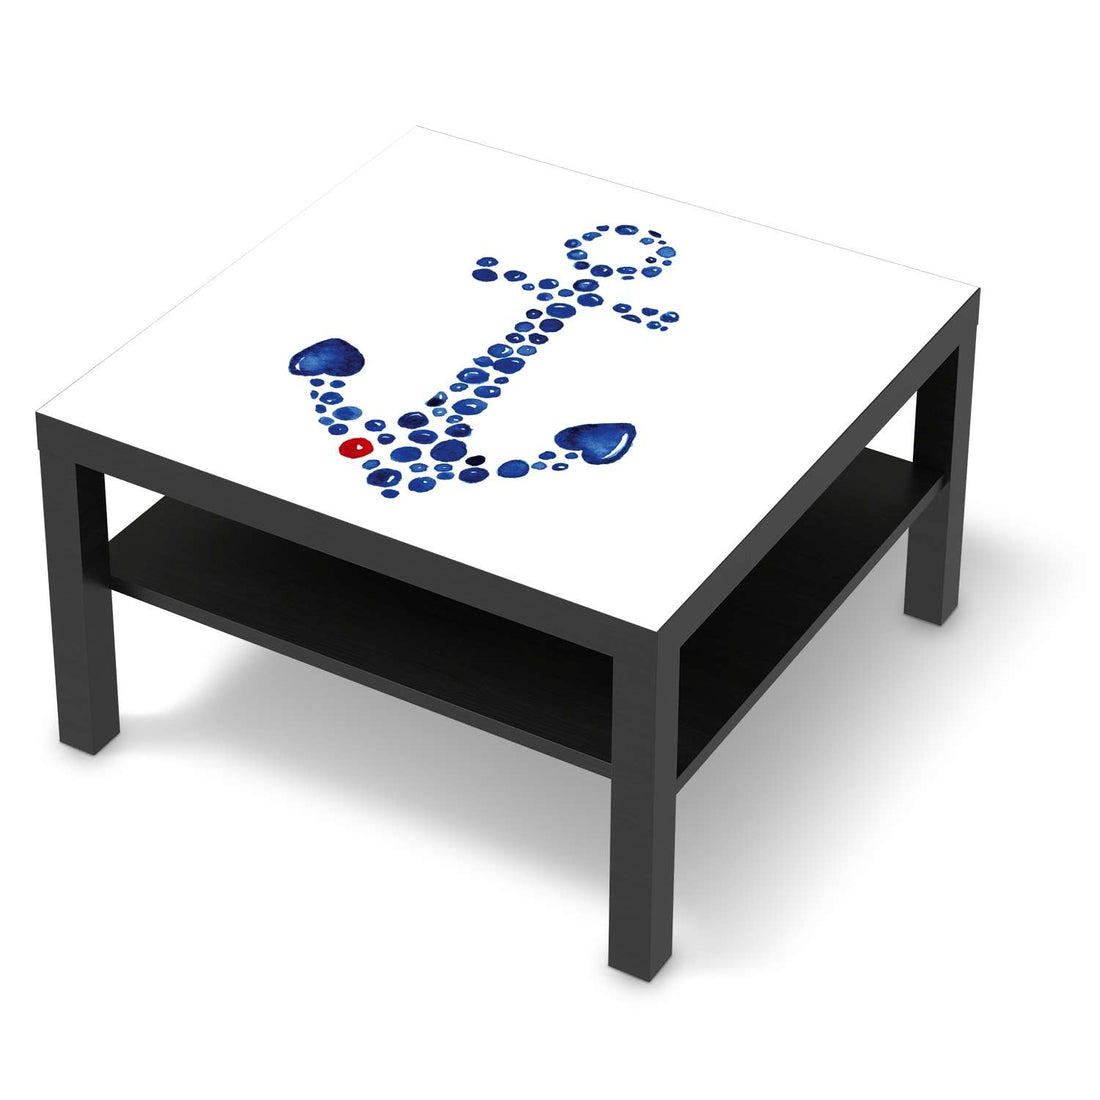 Selbstklebende Folie Anker - IKEA Lack Tisch 78x78 cm - schwarz